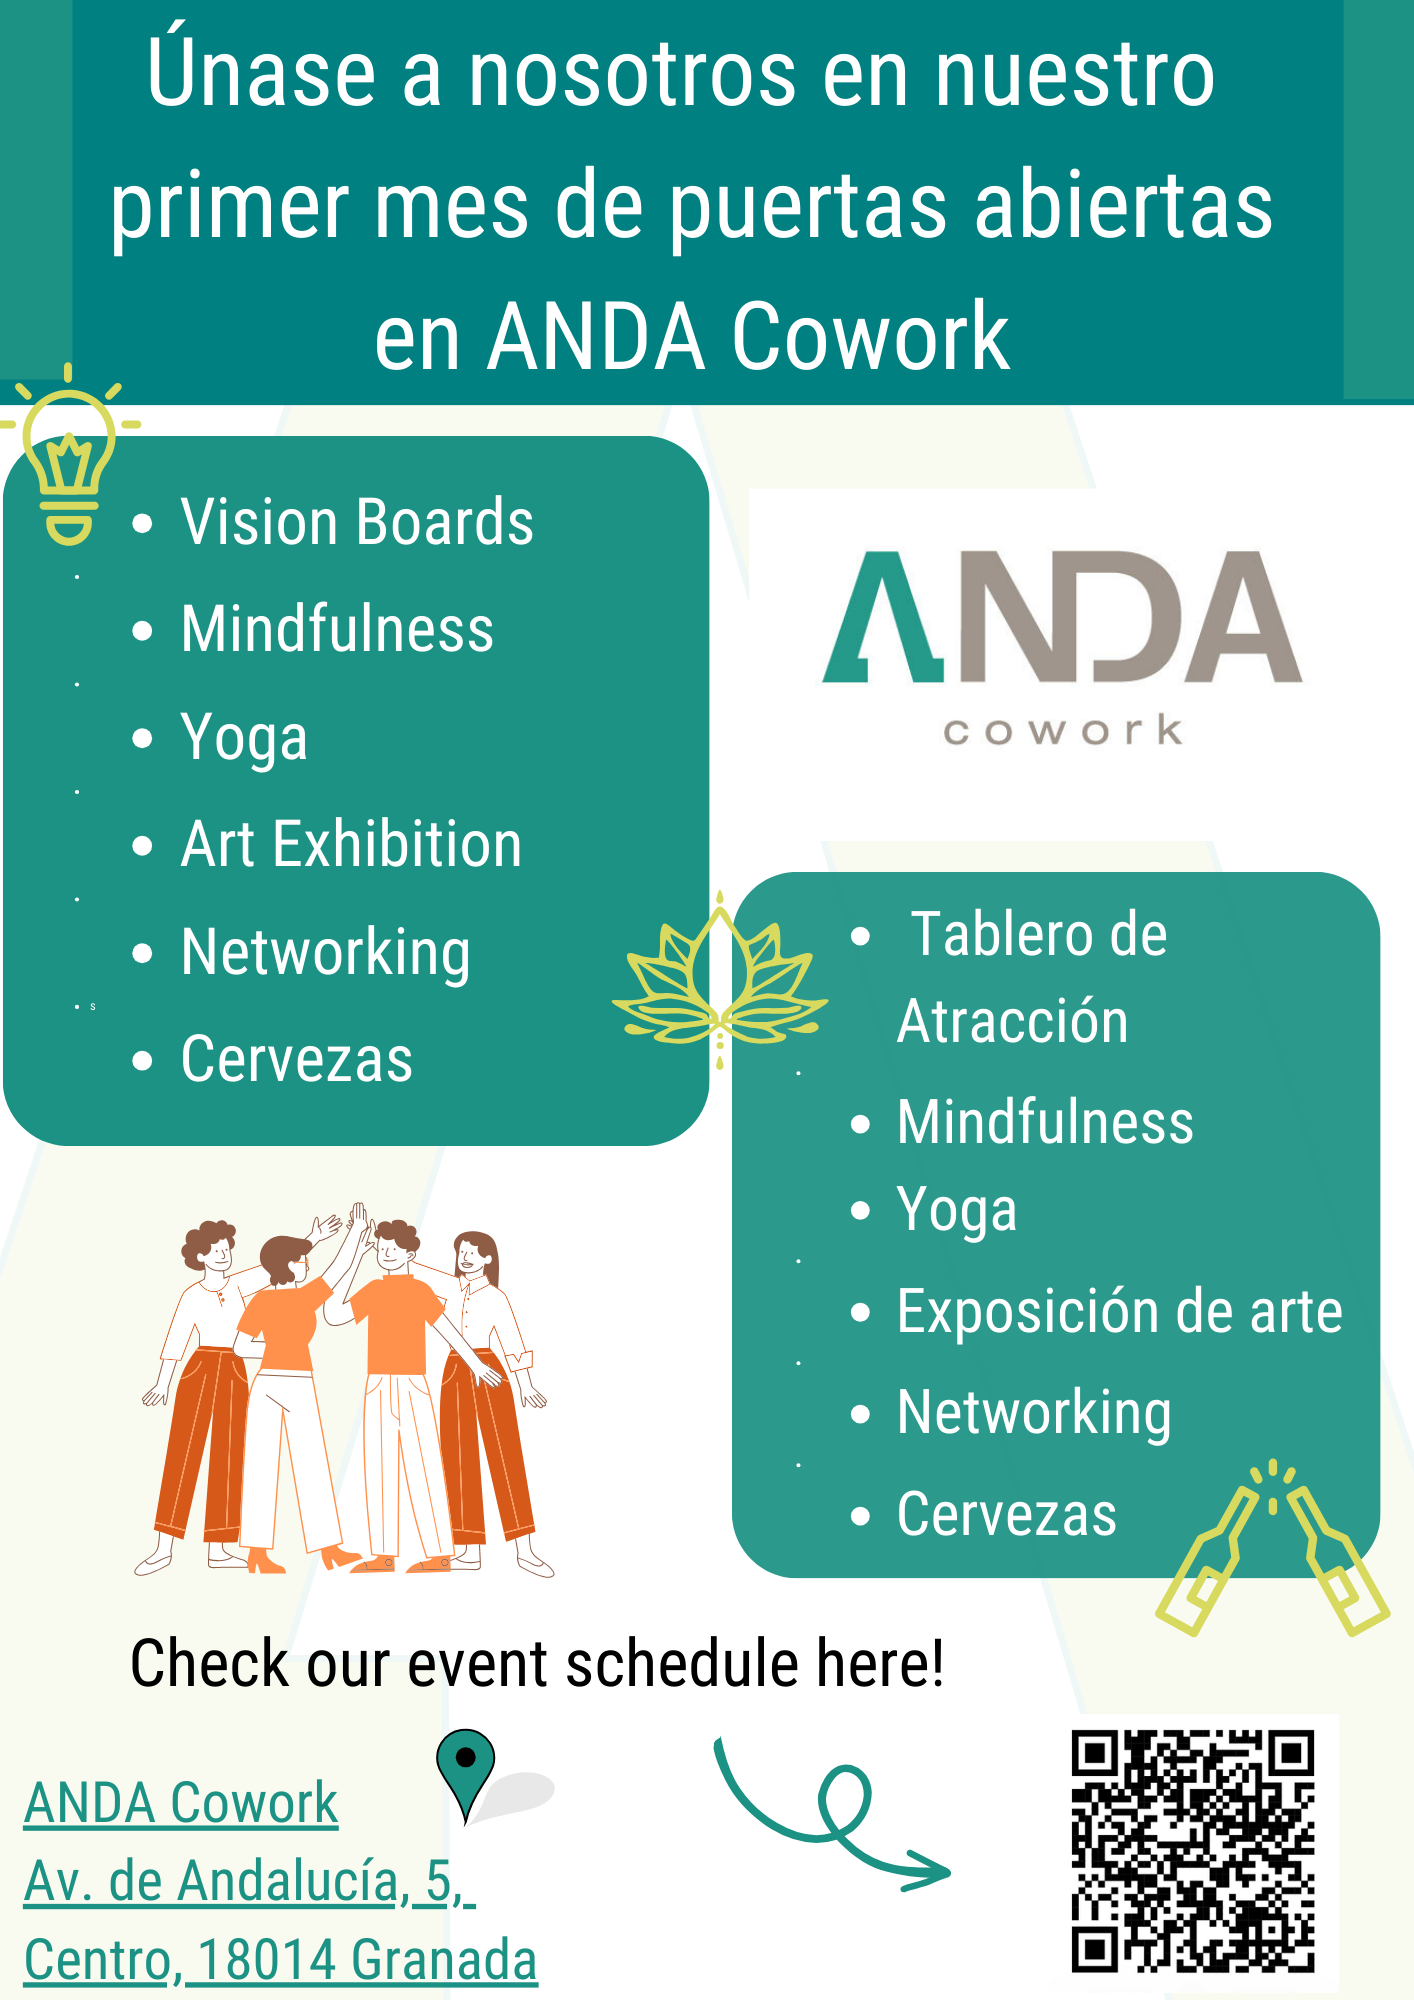 Open Days in November in ANDA Cowork